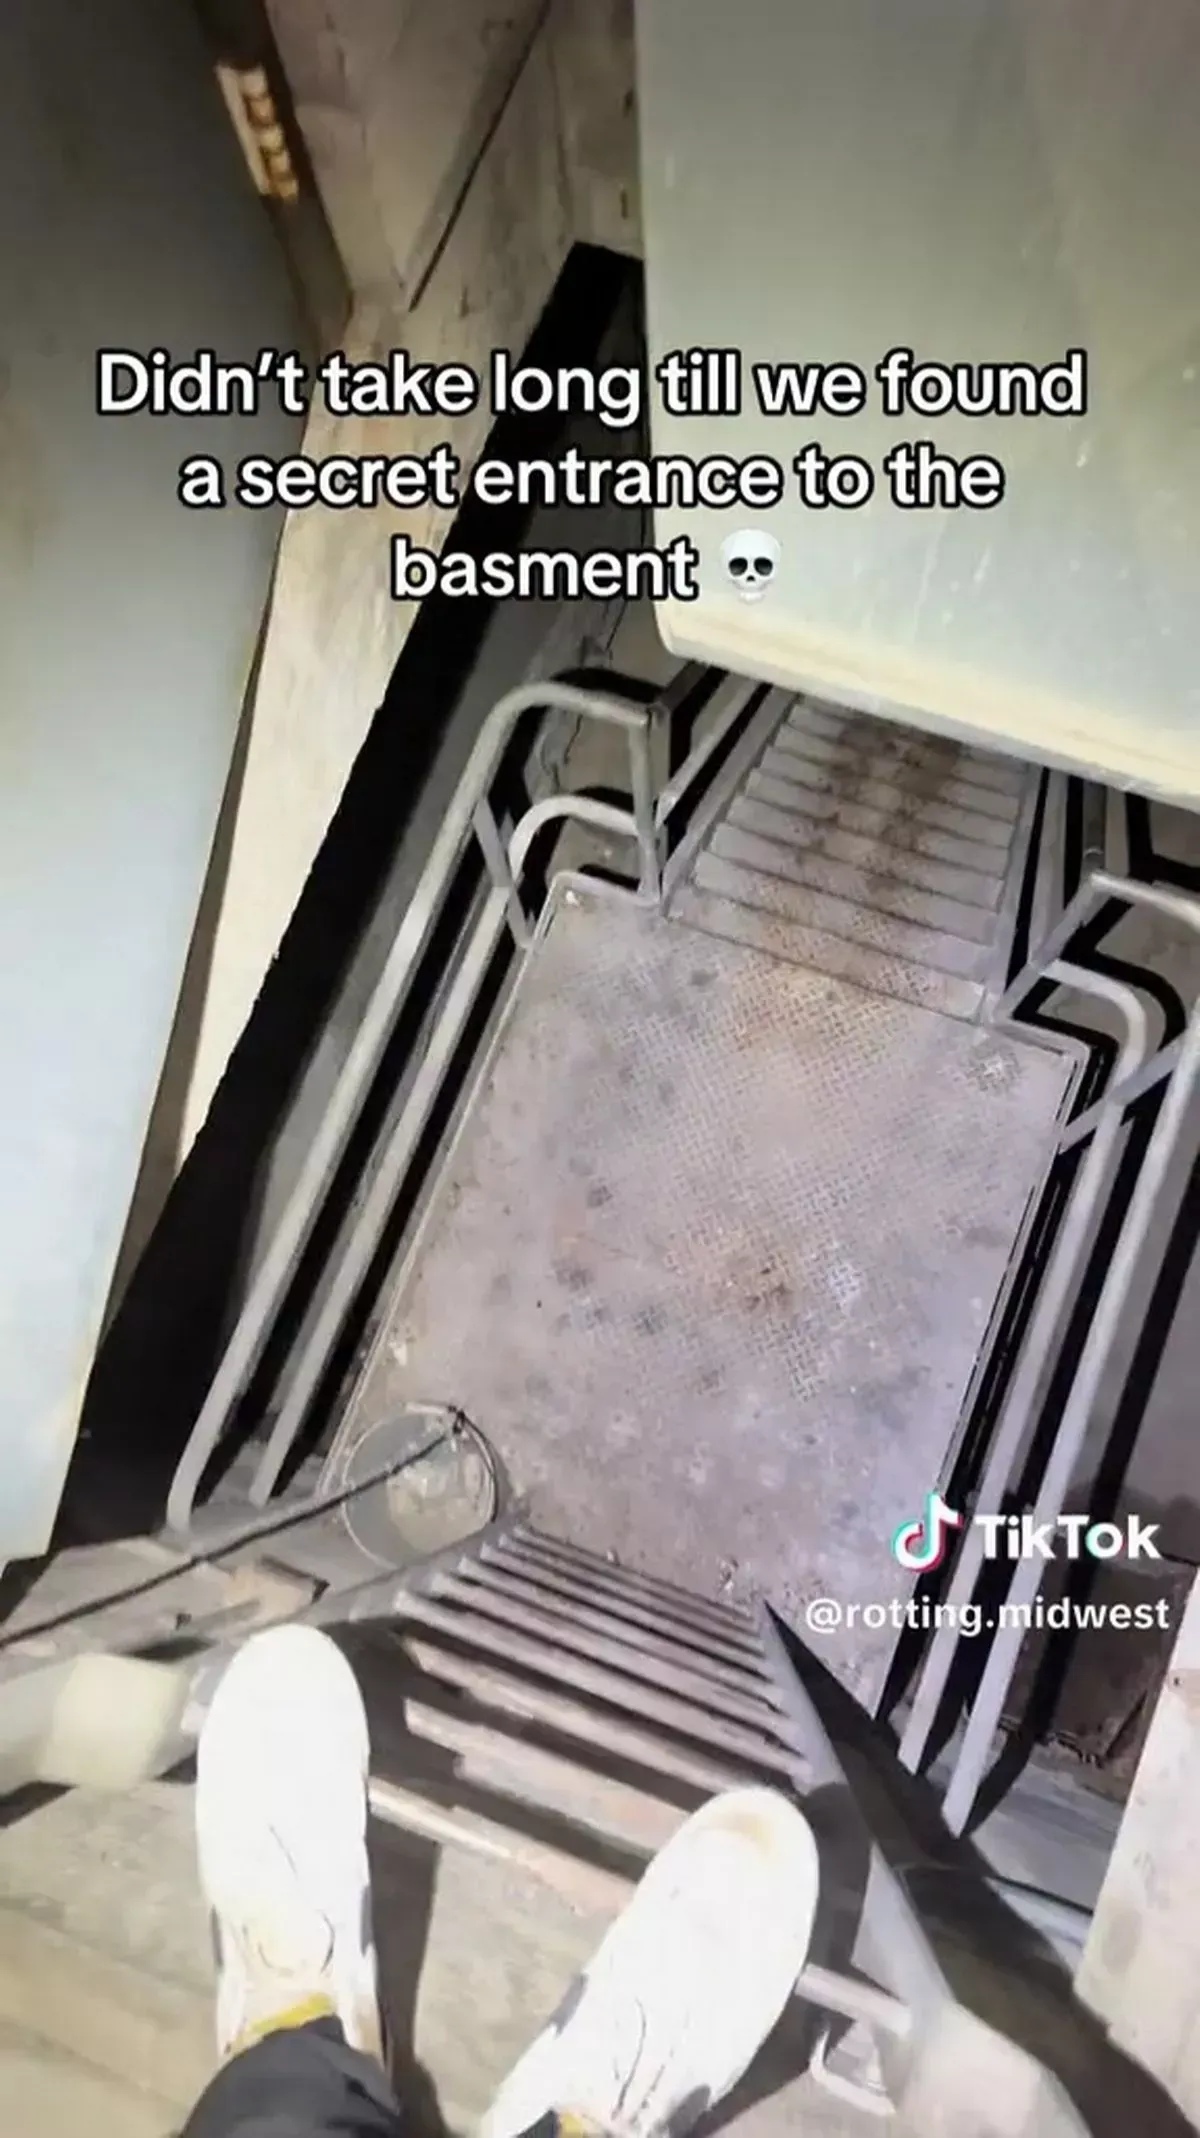 Urban explorer ontdekt 'creepy' netwerk van tunnels onder winkelcentrum: "Ik was echt bang!"